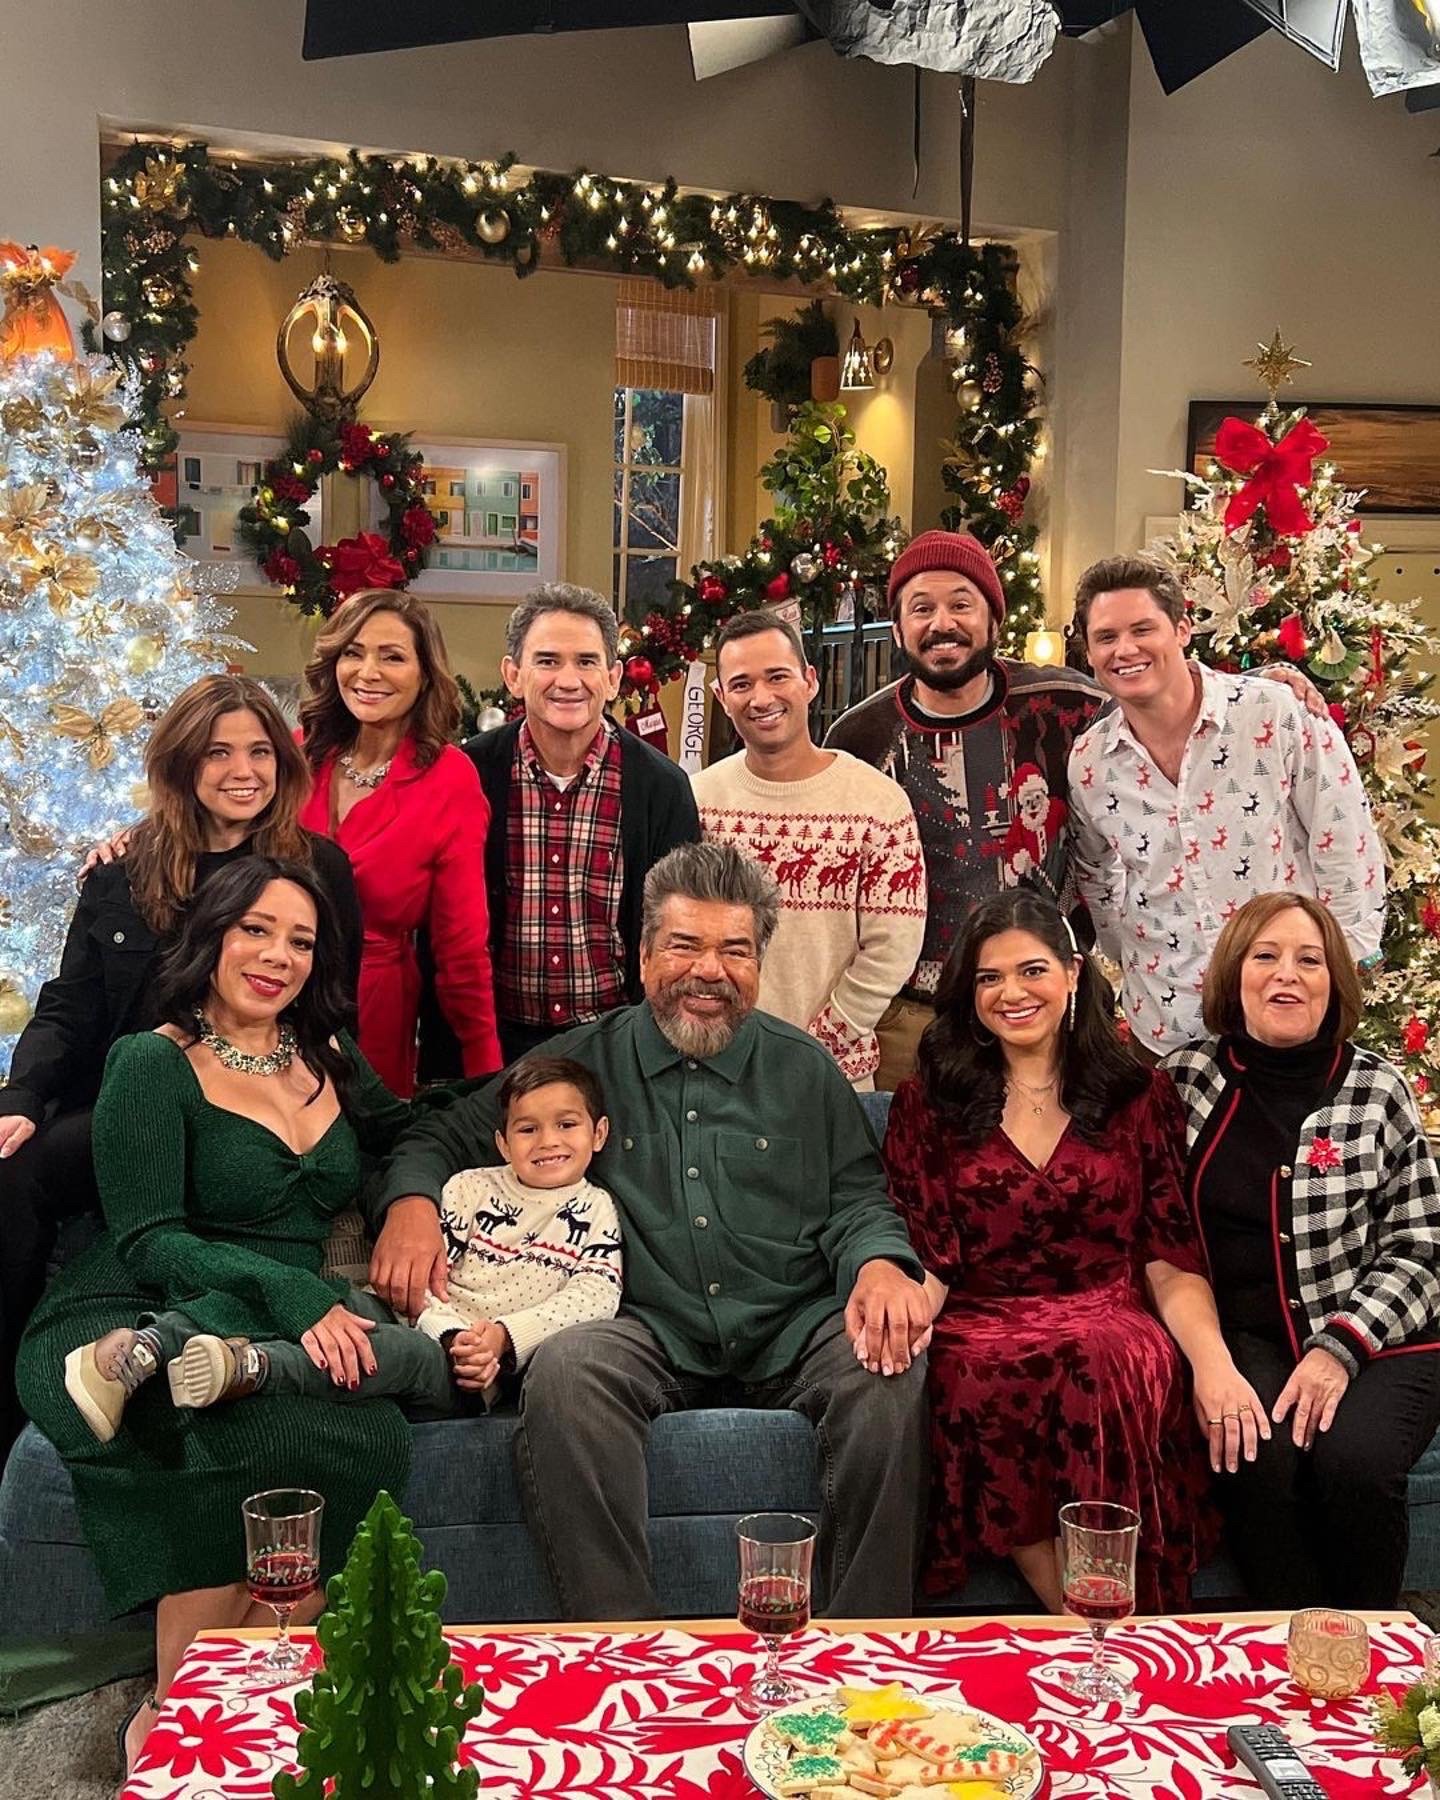 Lopez vs Lopez and Lopez Show Christmas Reunion — Lopez